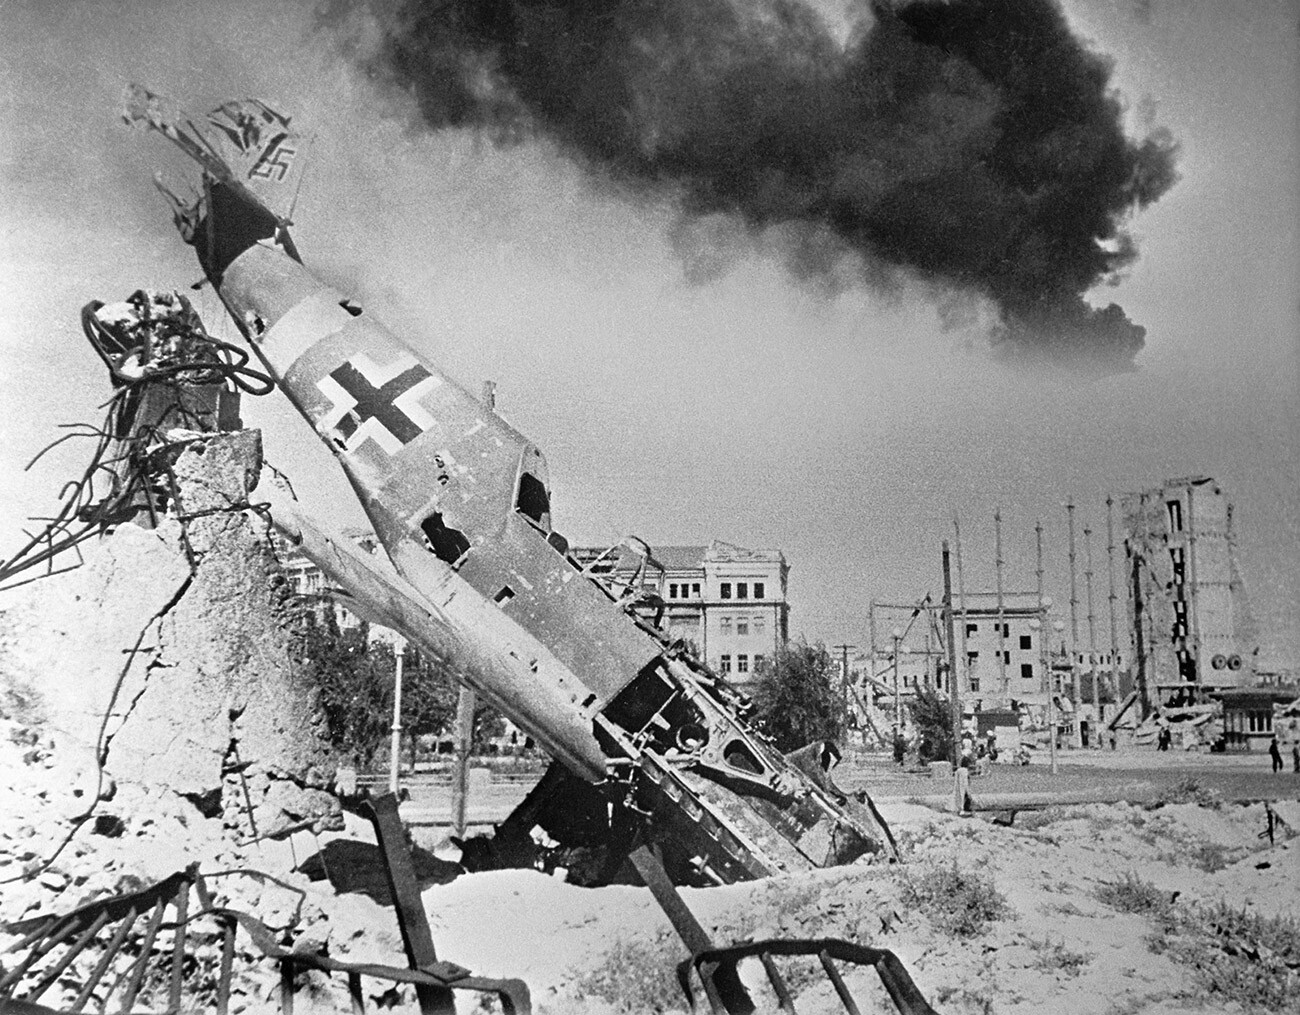 Ein abgeschossenes deutsches Jagdflugzeug (Me 109) liegt inmitten der Ruinen von Stalingrad. Während der Belagerung von 1942 bis 1943 kam es zu heftigen Luftkämpfen über der Stadt.